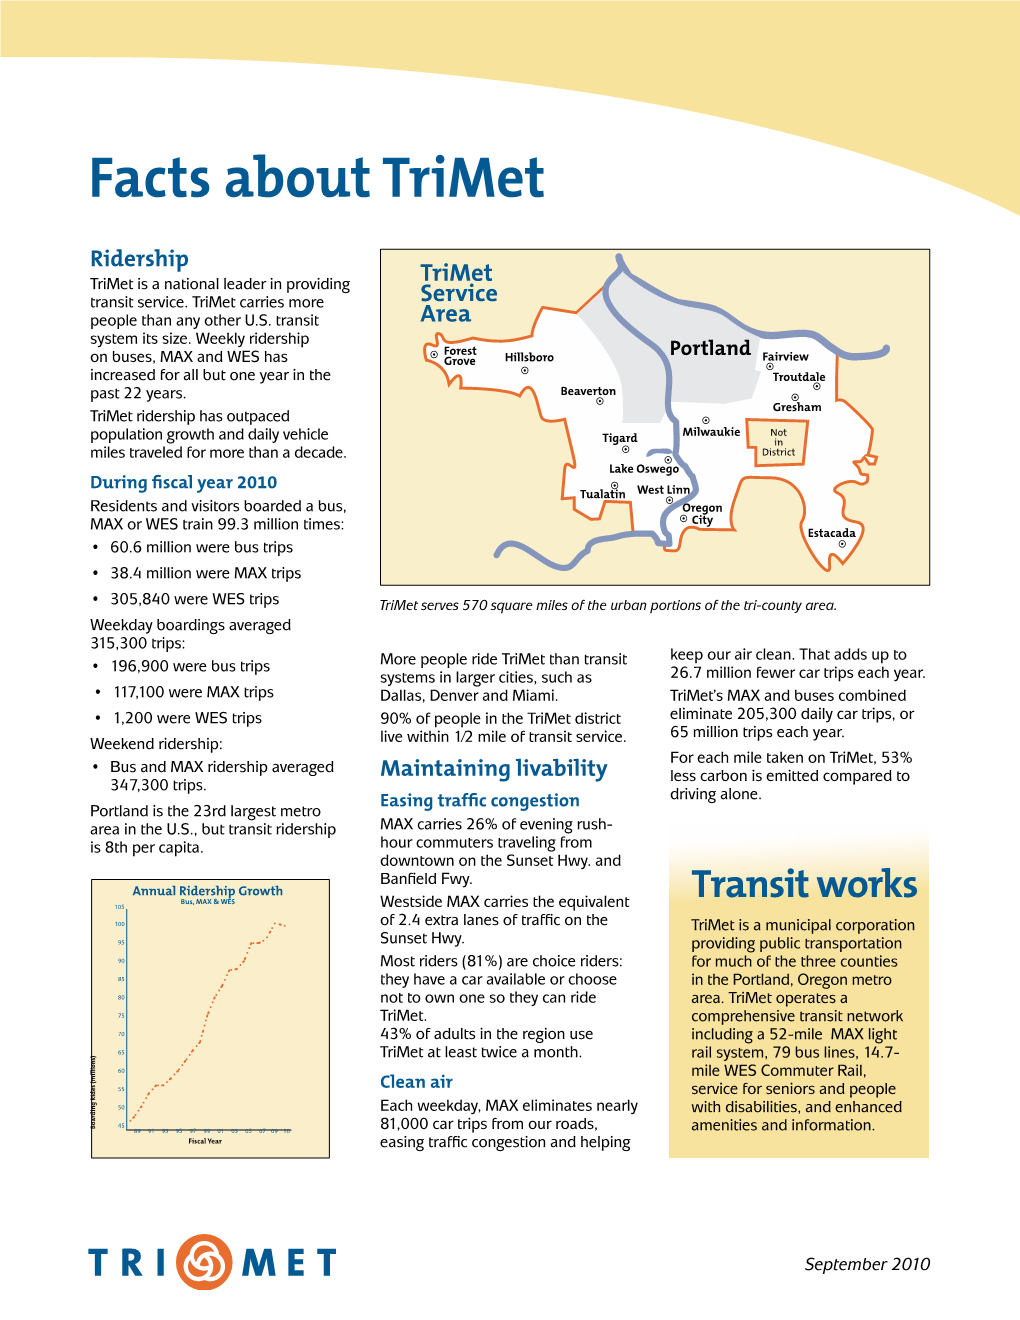 Trimet's Factsheet